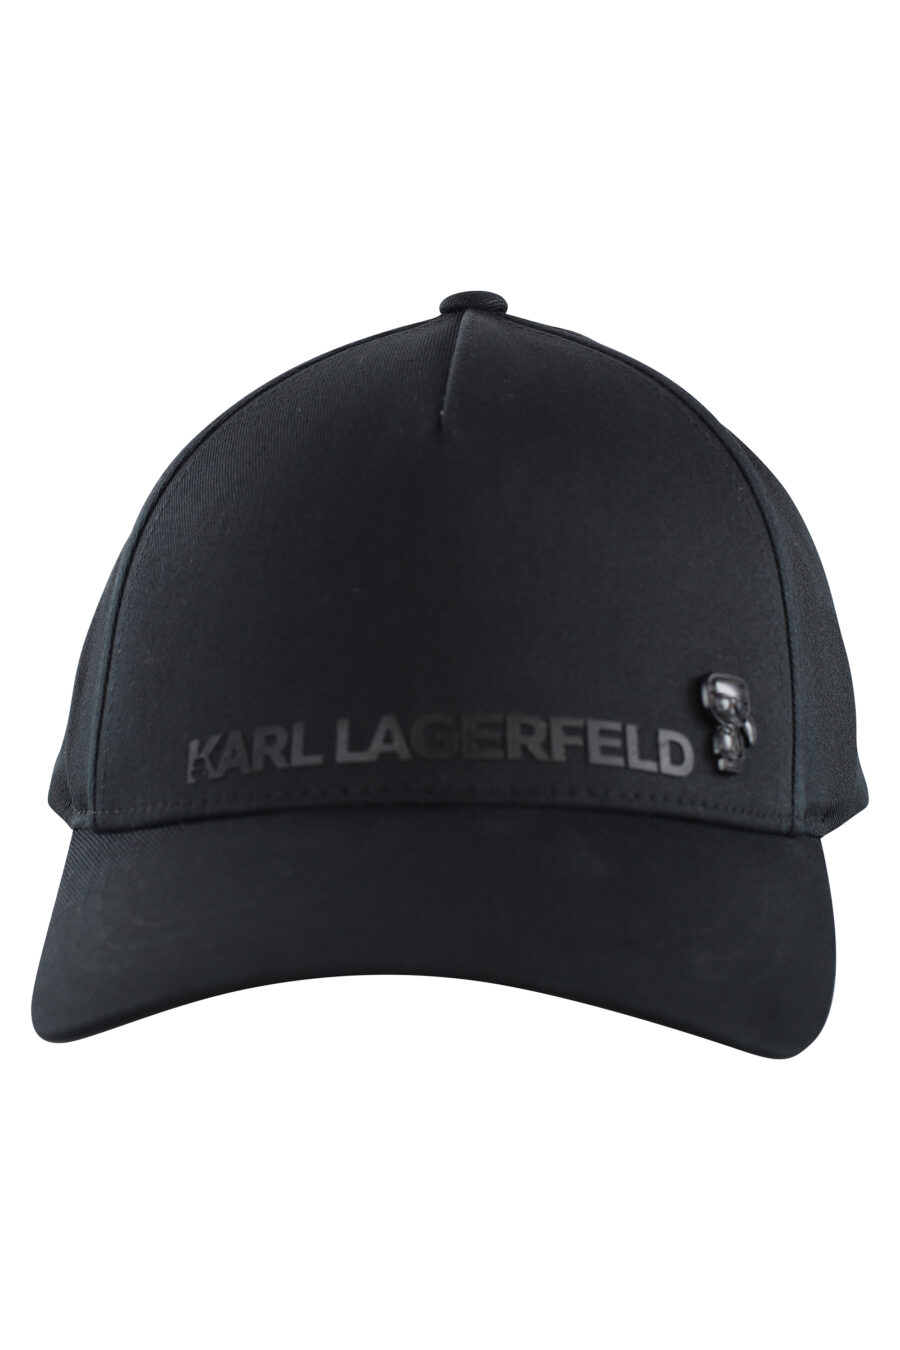 Gorra negra con logo monocromático - IMG 7059